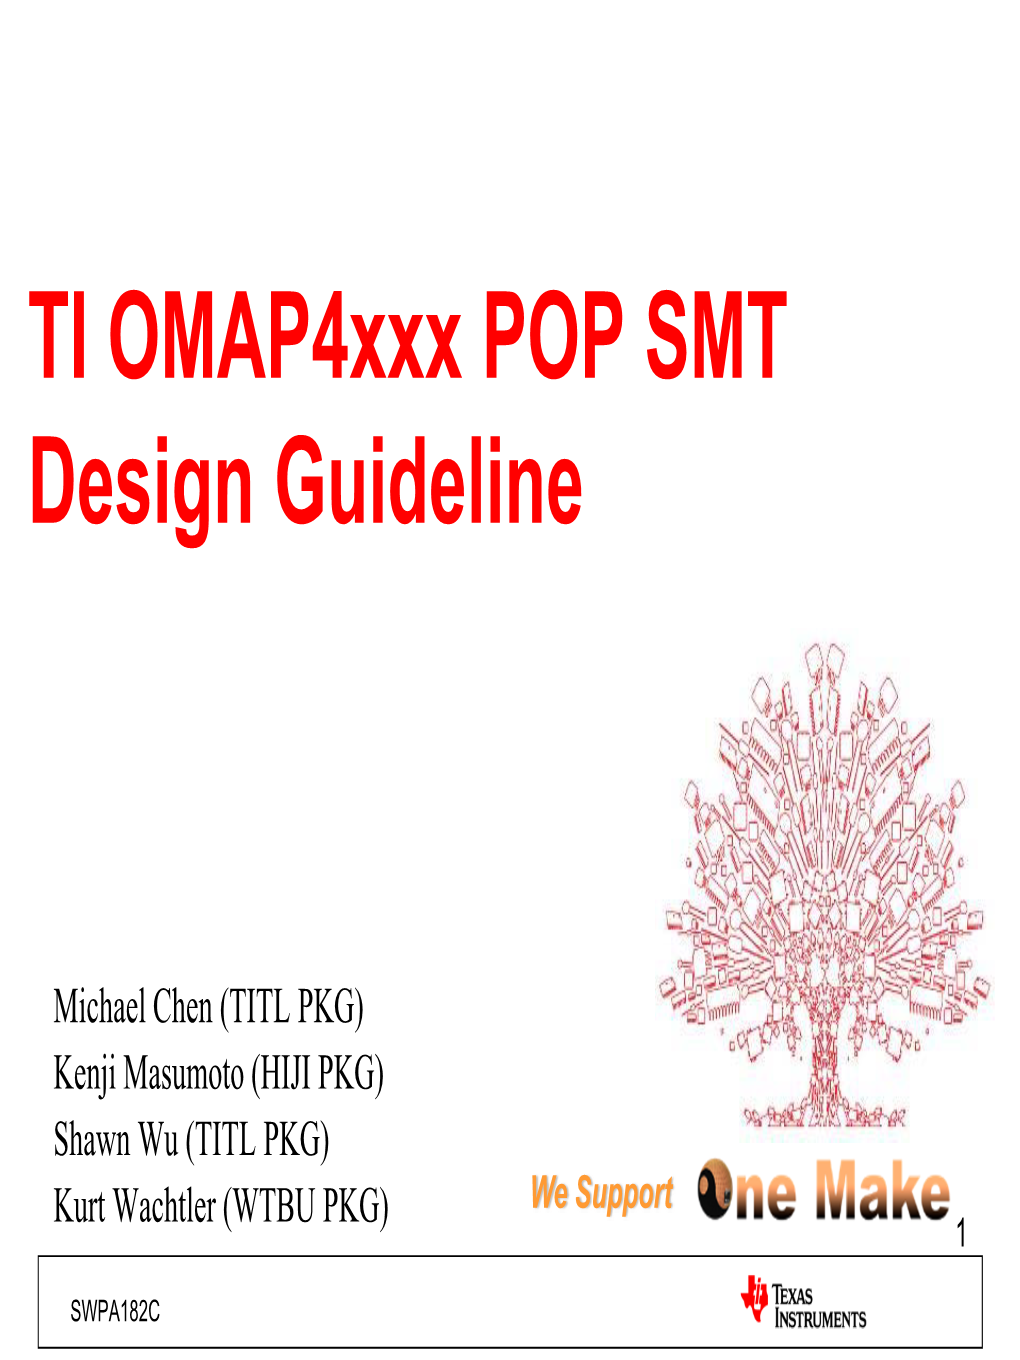 TI OMAP4430 POP SMT Design Guideline (Rev. C)